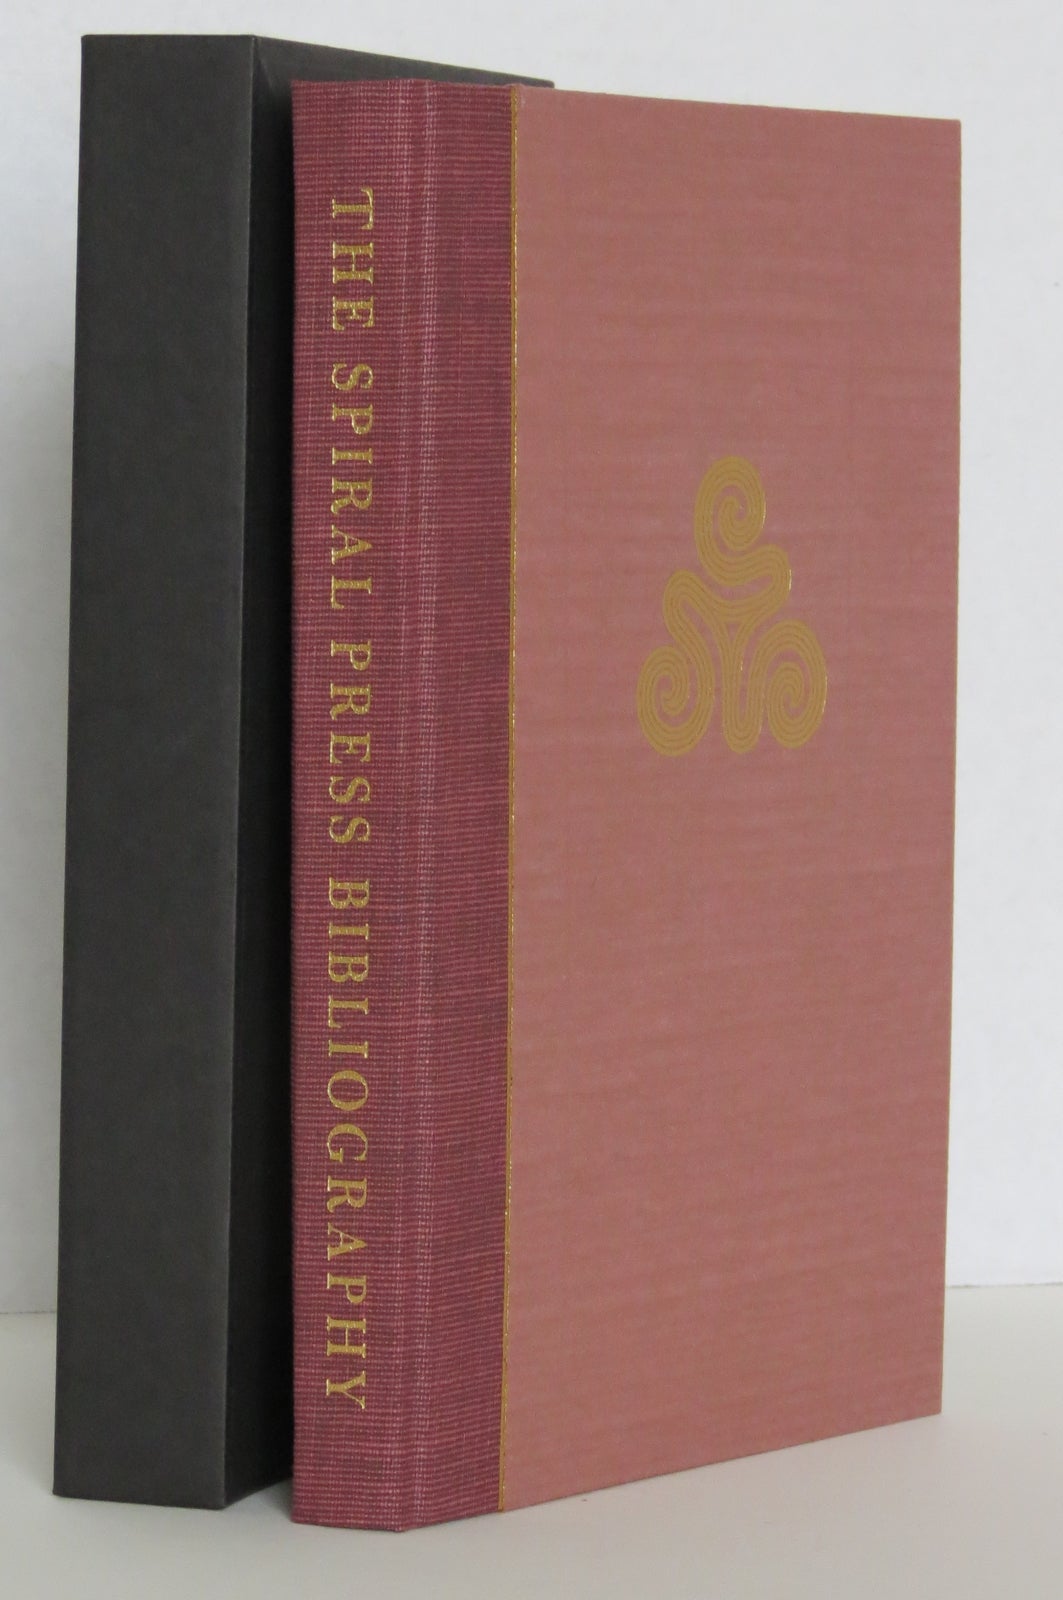 THE SPIRAL PRESS, 1926-1971: A Bibliographical Checklist. Philip N. Cronenwett.